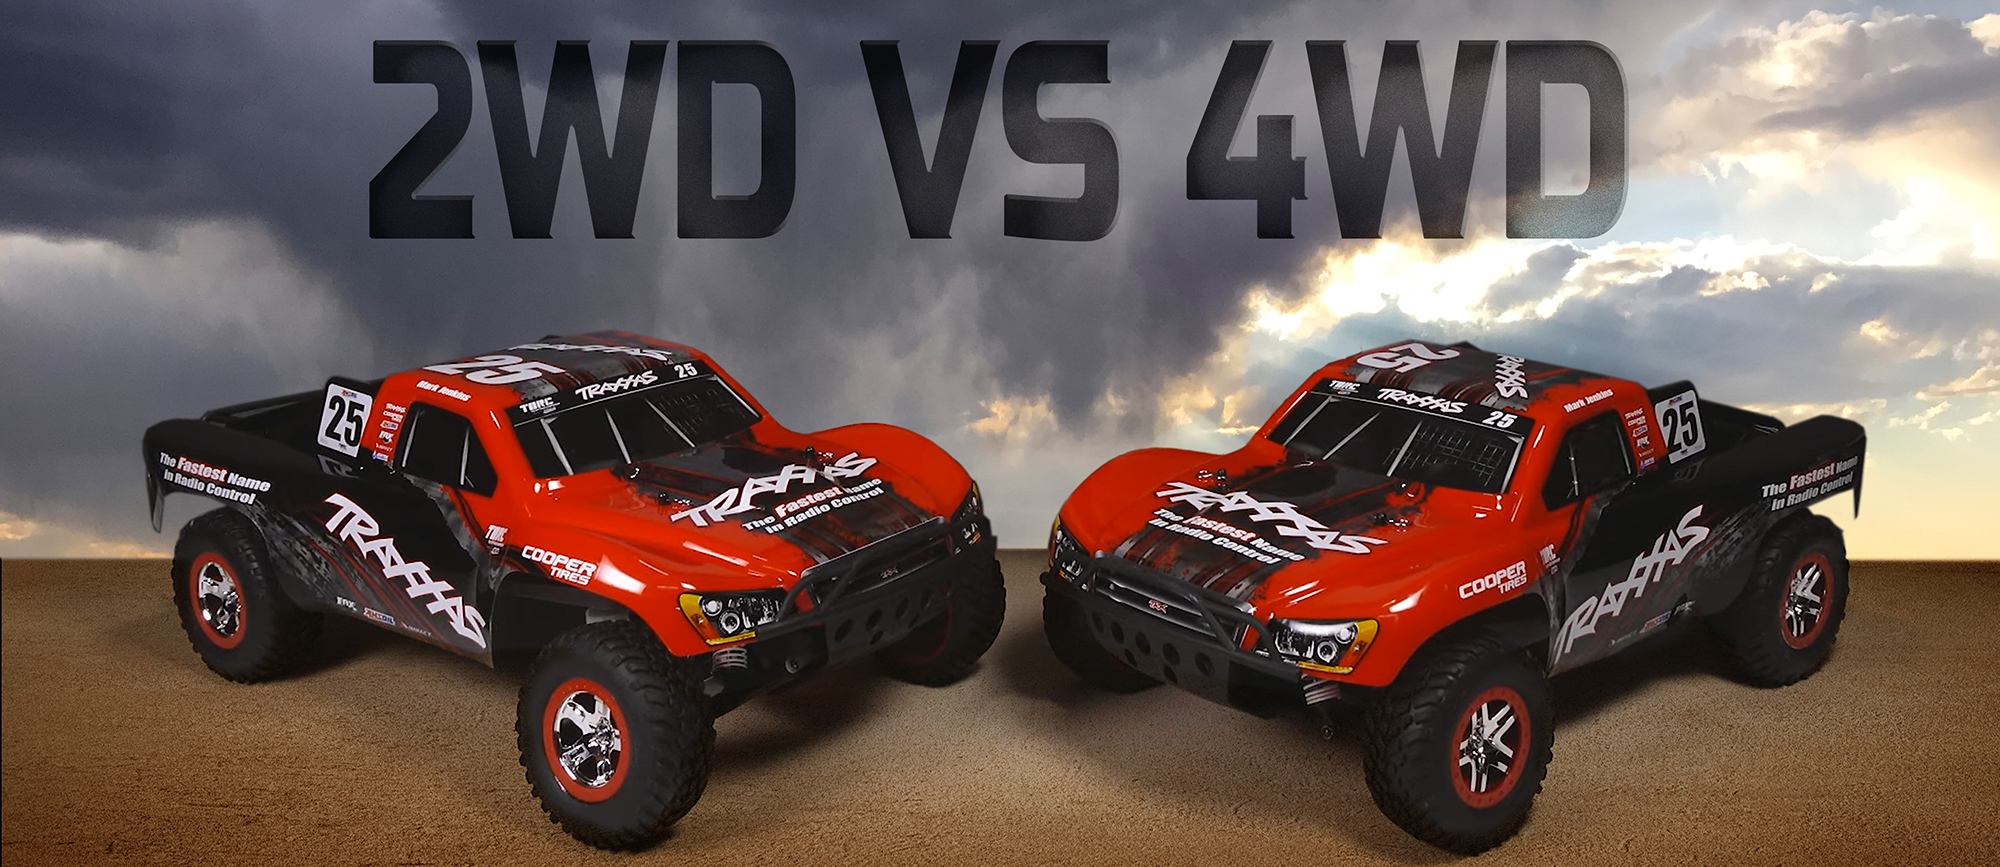 Traxxas Slash 2WD versus 4WD - Which is best